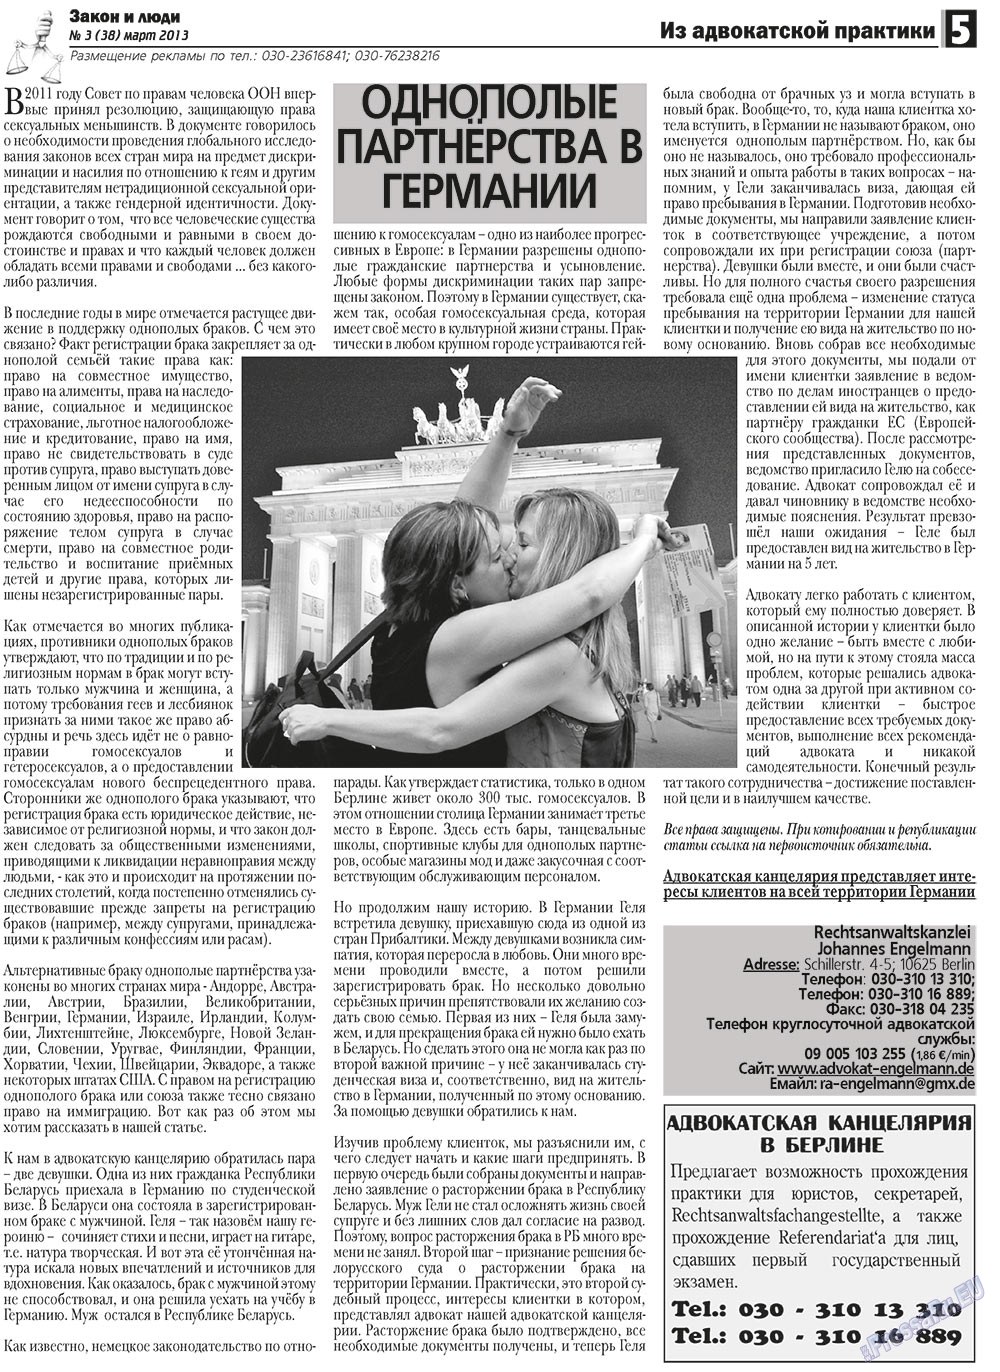 Закон и люди (газета). 2013 год, номер 3, стр. 5